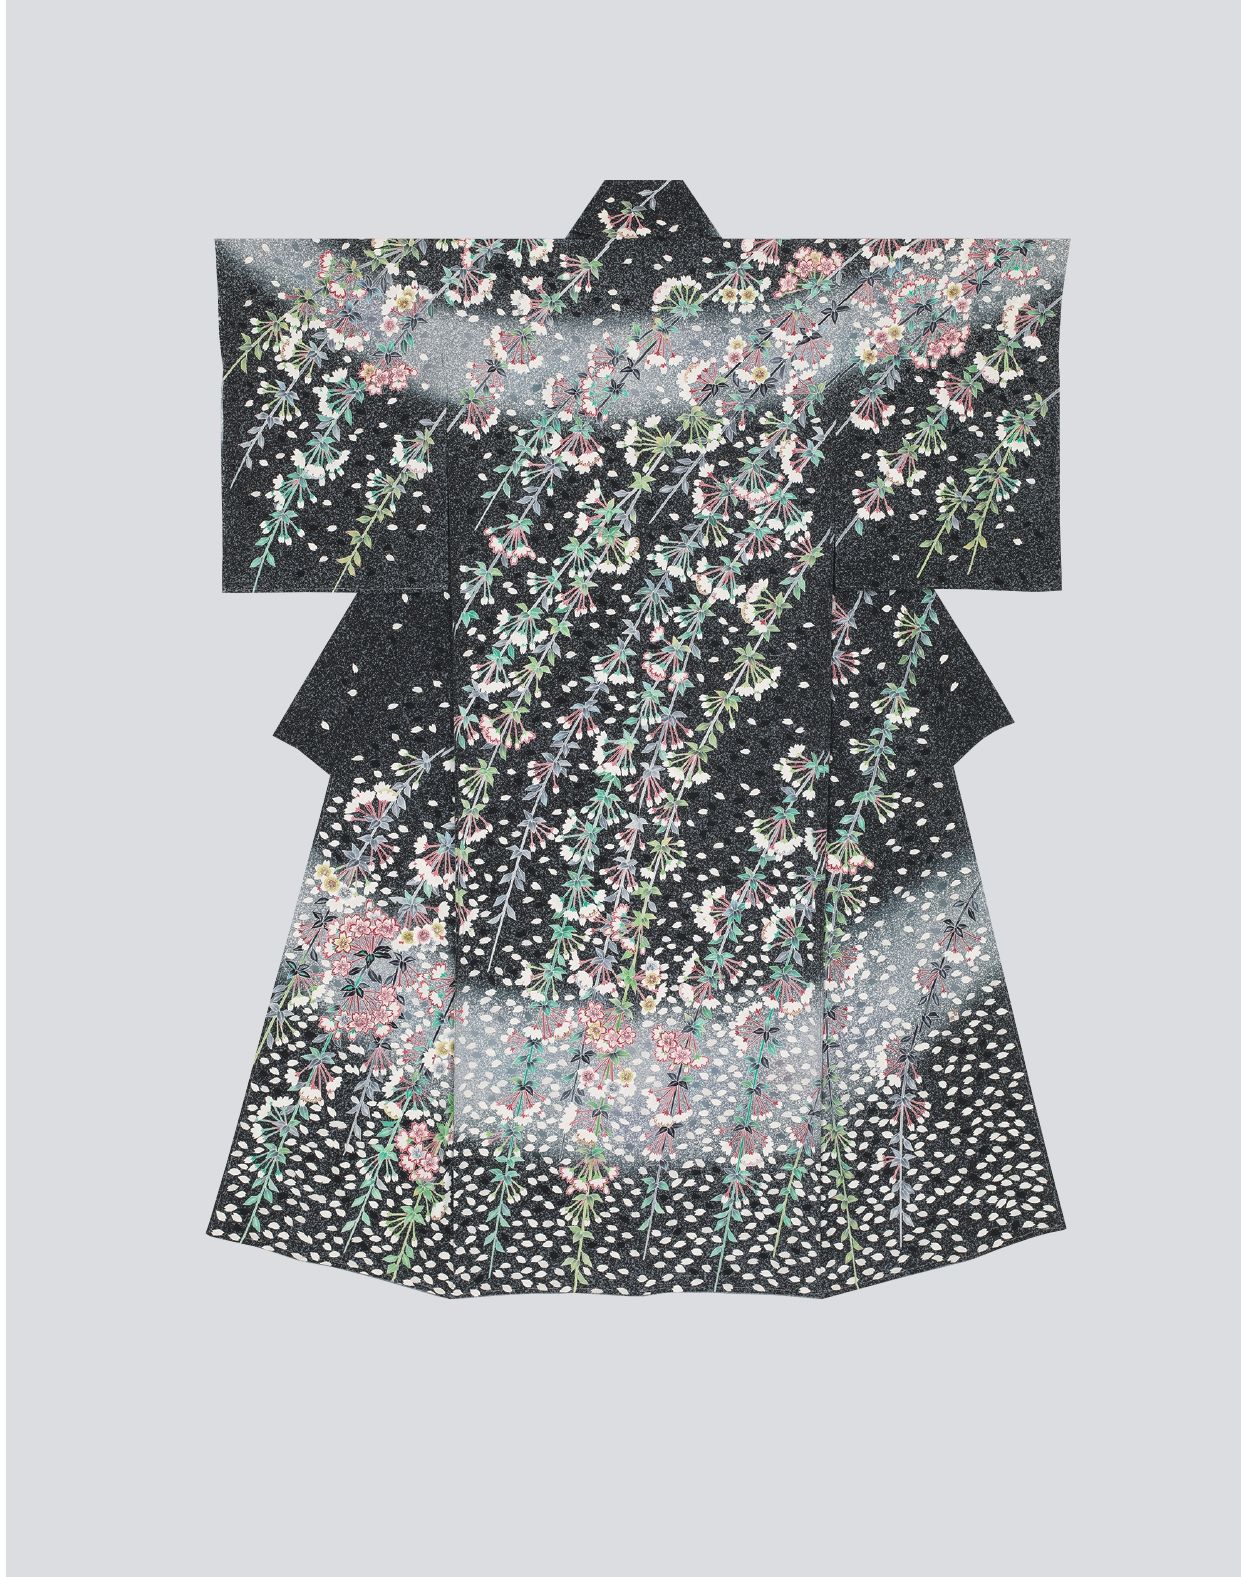 染織、工芸、日本美術の展覧会７選（2021年10月27日）